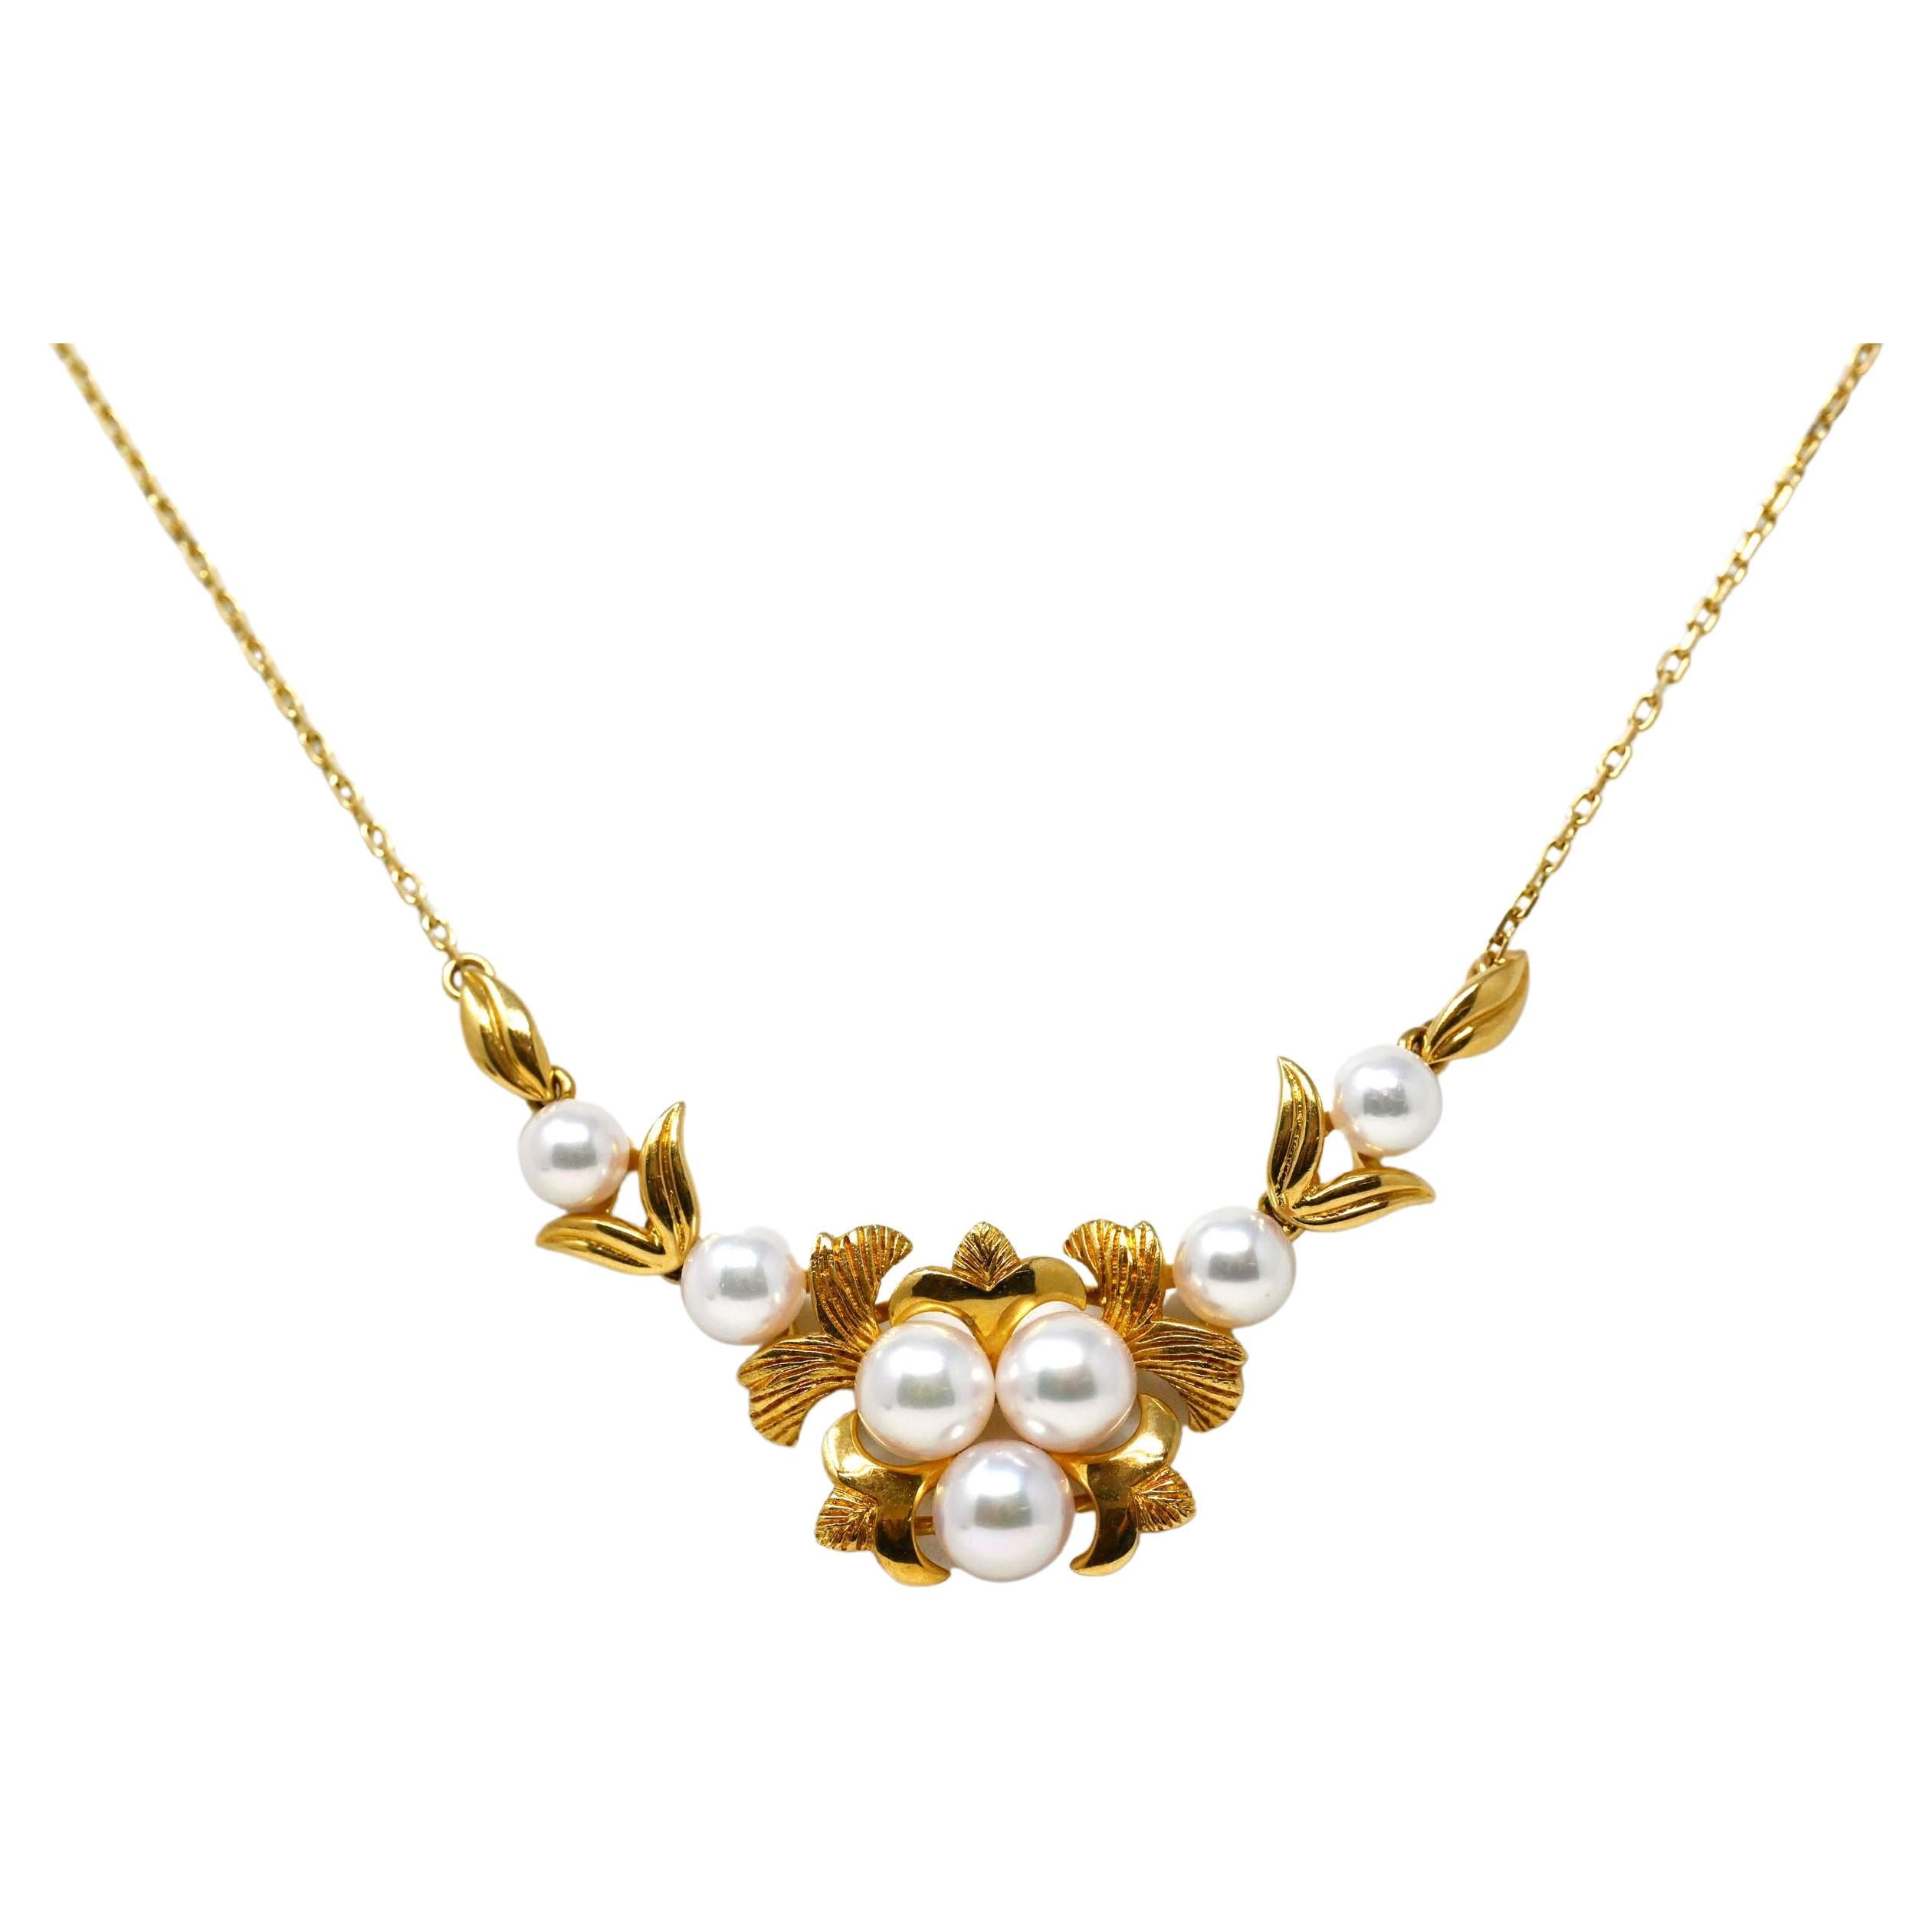 Vintage 18k Gold Cultured Pearls Necklace For Sale